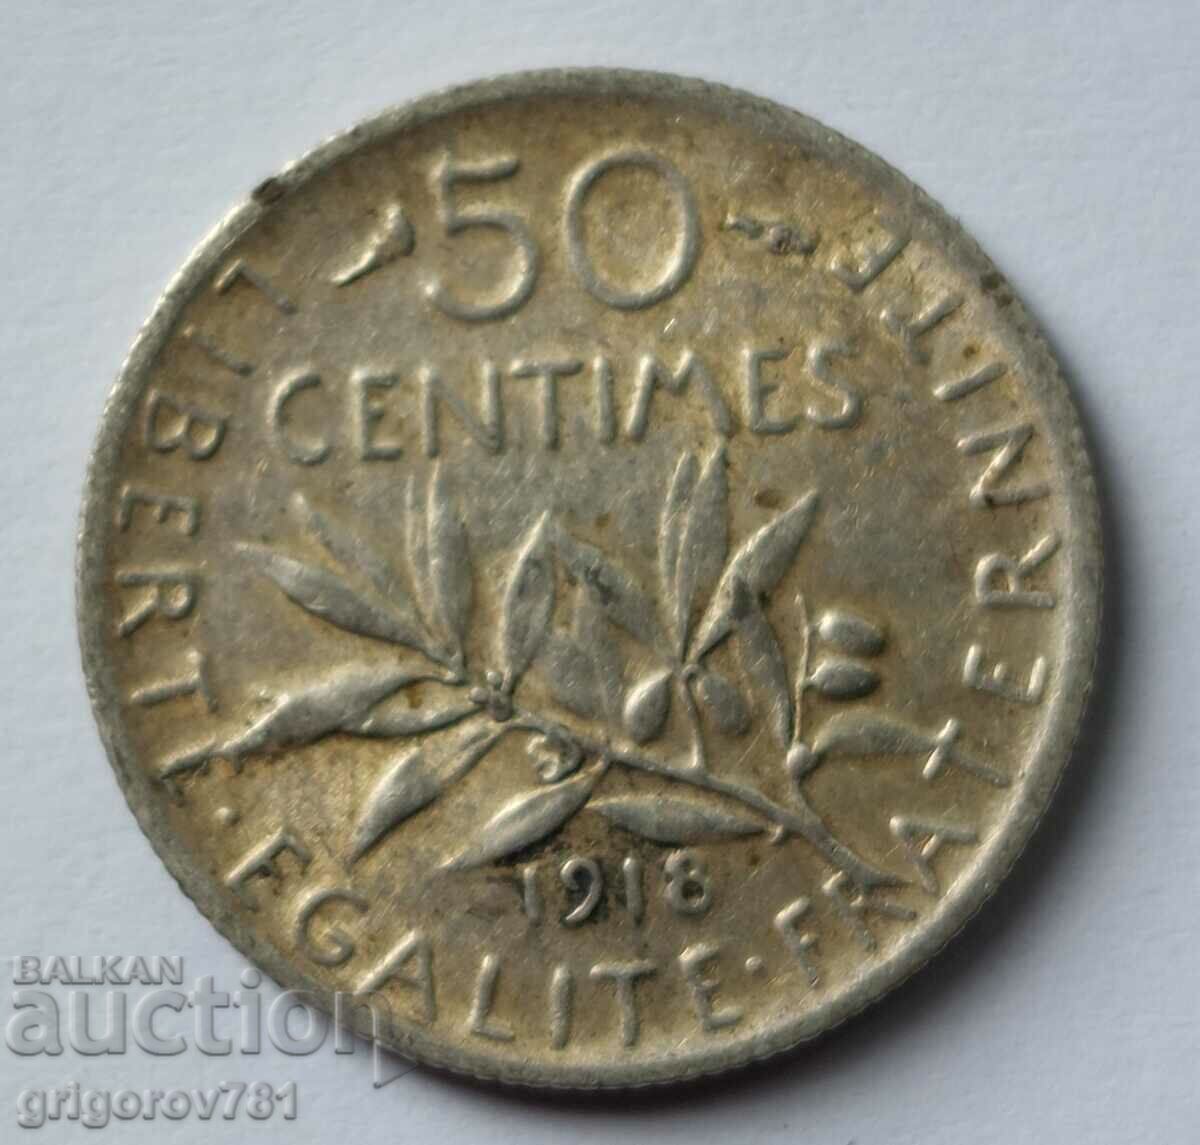 50 сантима сребро Франция 1918 -  сребърна монета №24